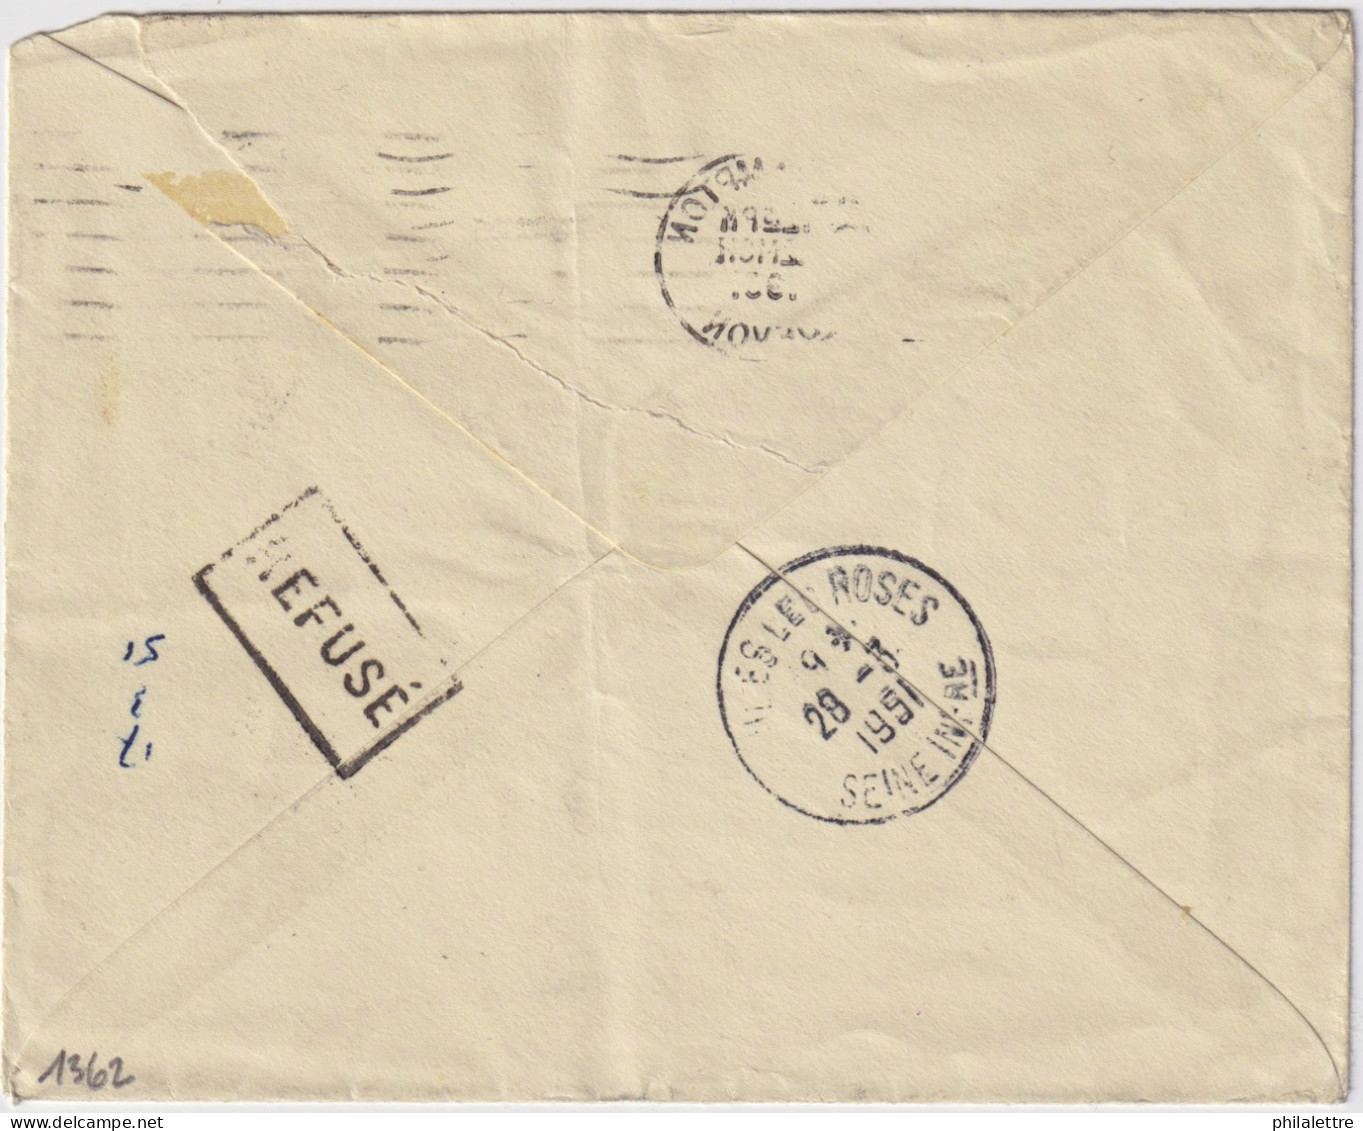 FRANCE 1951 LSC D'Angleterre Sous-affranchie (2-1/2d Pour 4d) Taxée 17f à Veules-les-Roses, Refusée, Taxée 4d Au Retour - 1859-1959 Brieven & Documenten